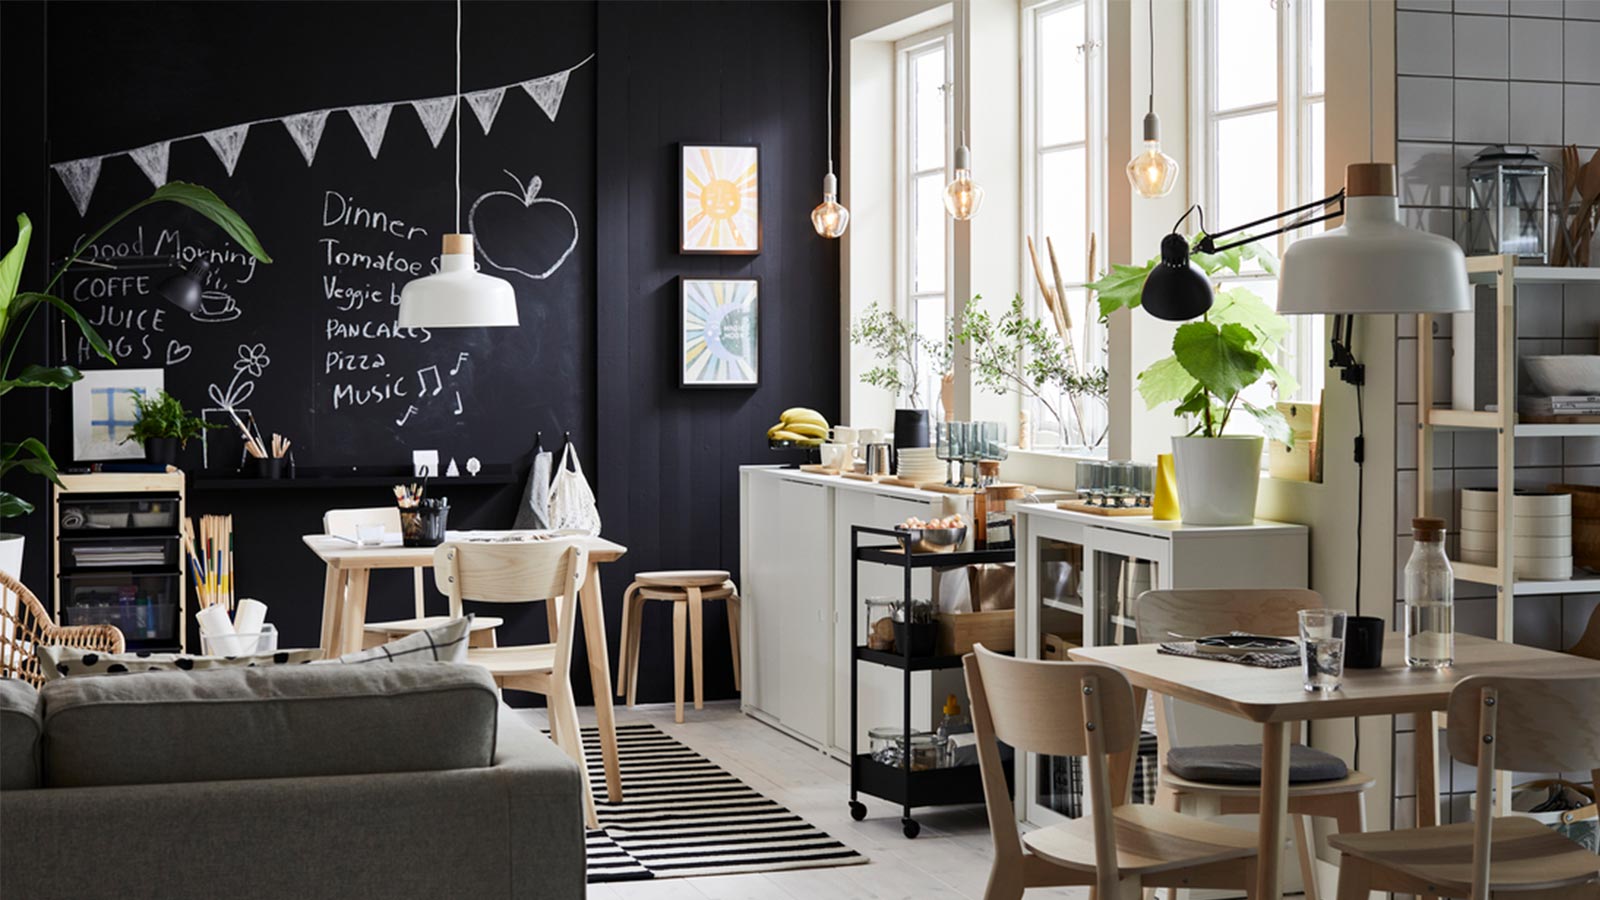 IKEA-iskandinav kafe atmosferine sahip rahat bir yemek odasi 1